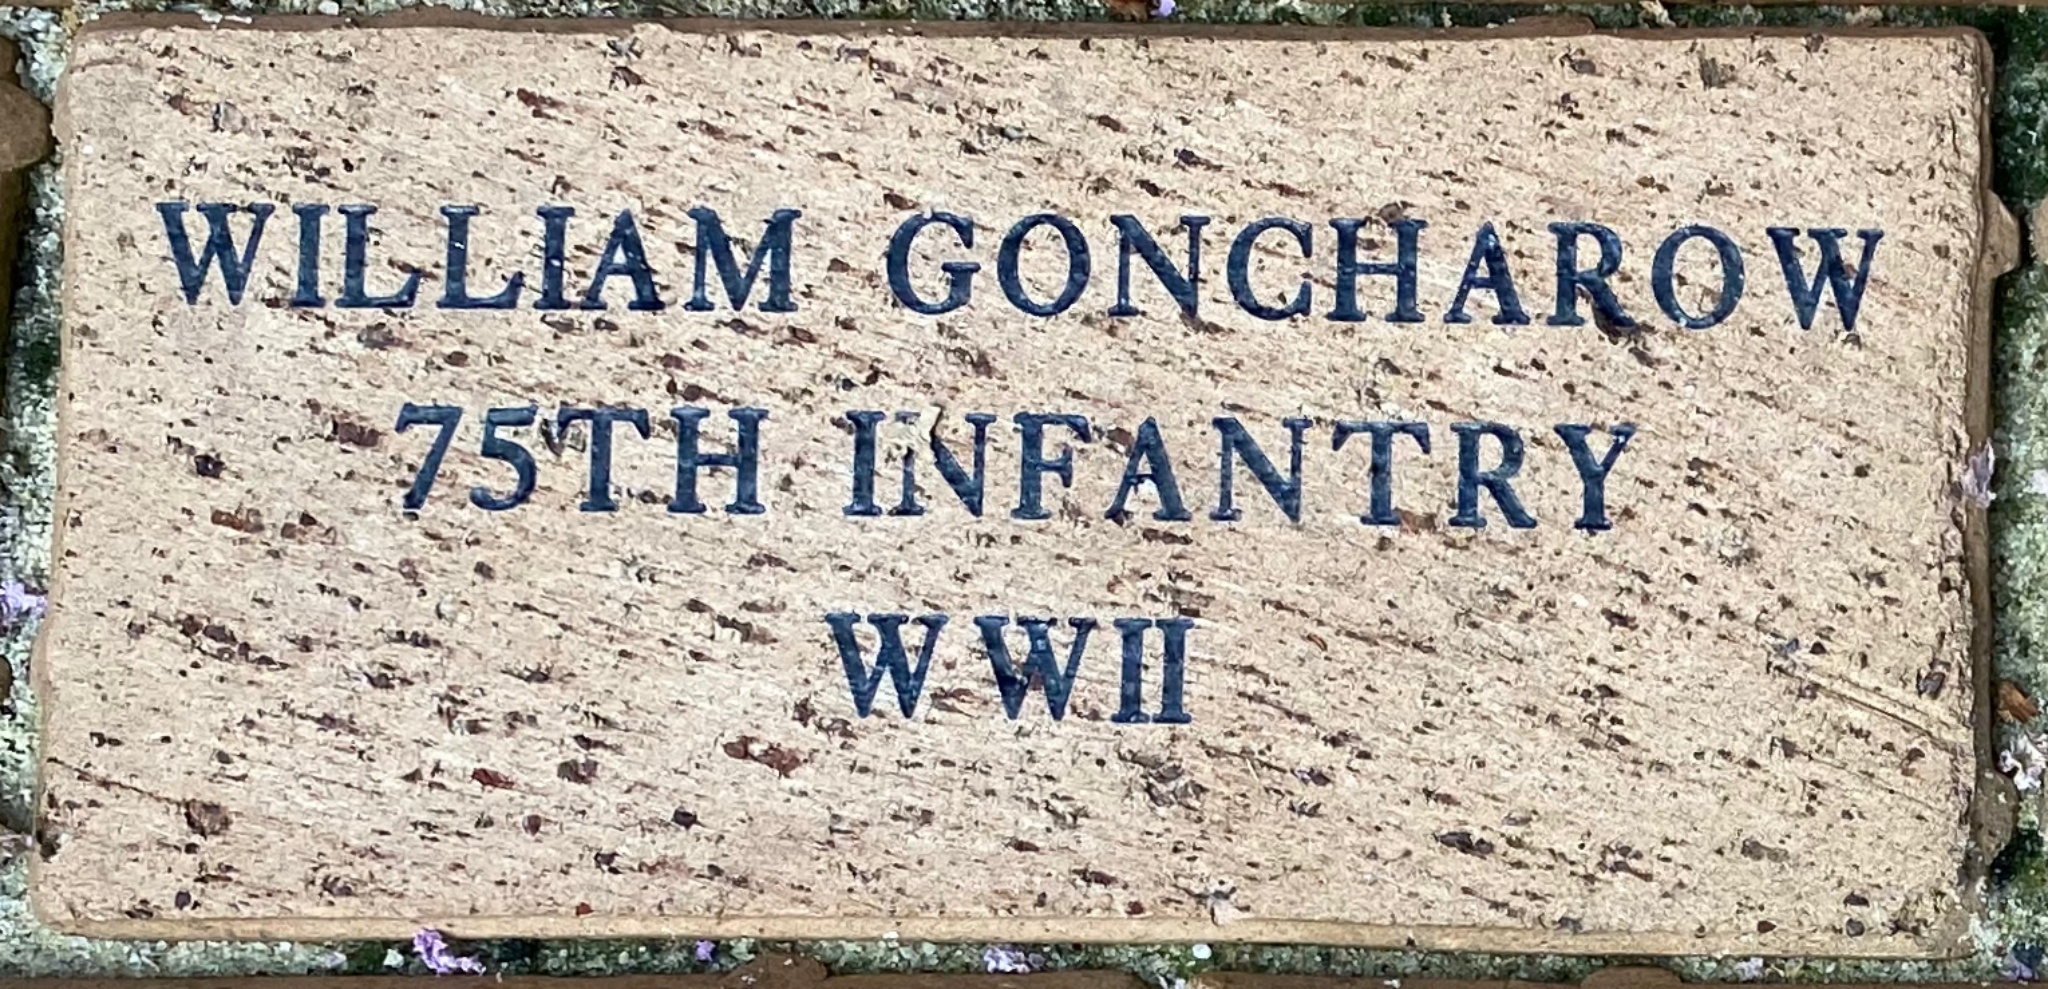 WILLIAM GONCHAROW 75TH INFANTRY WWII